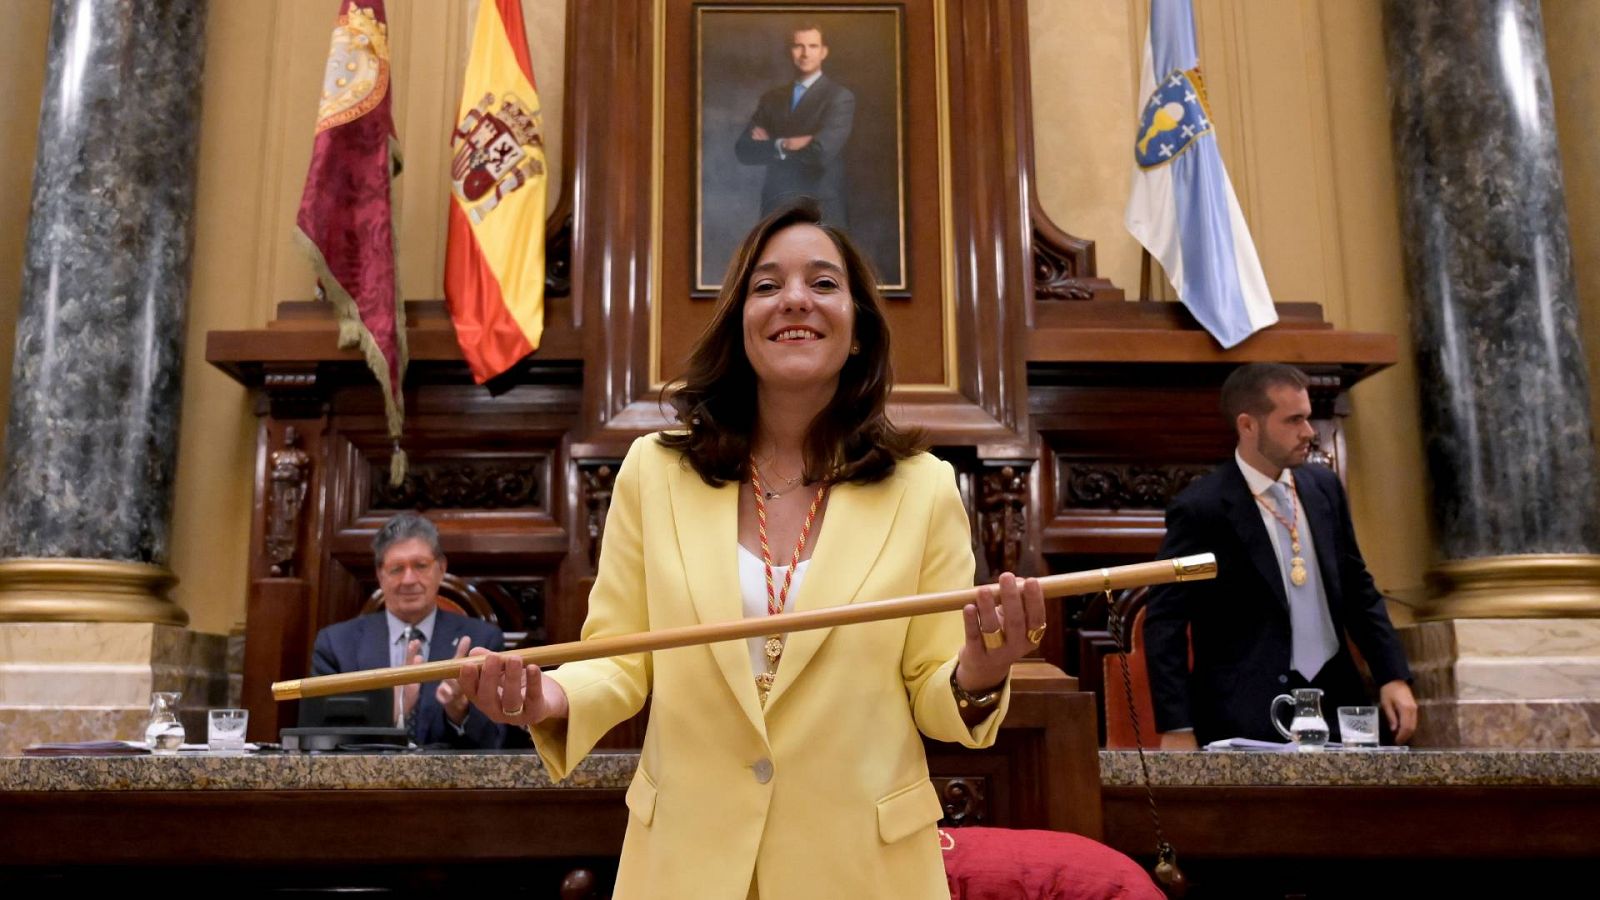 Inés Rey, alcaldesa de A Coruña: "En la política del diálogo es donde tenemos que estar"